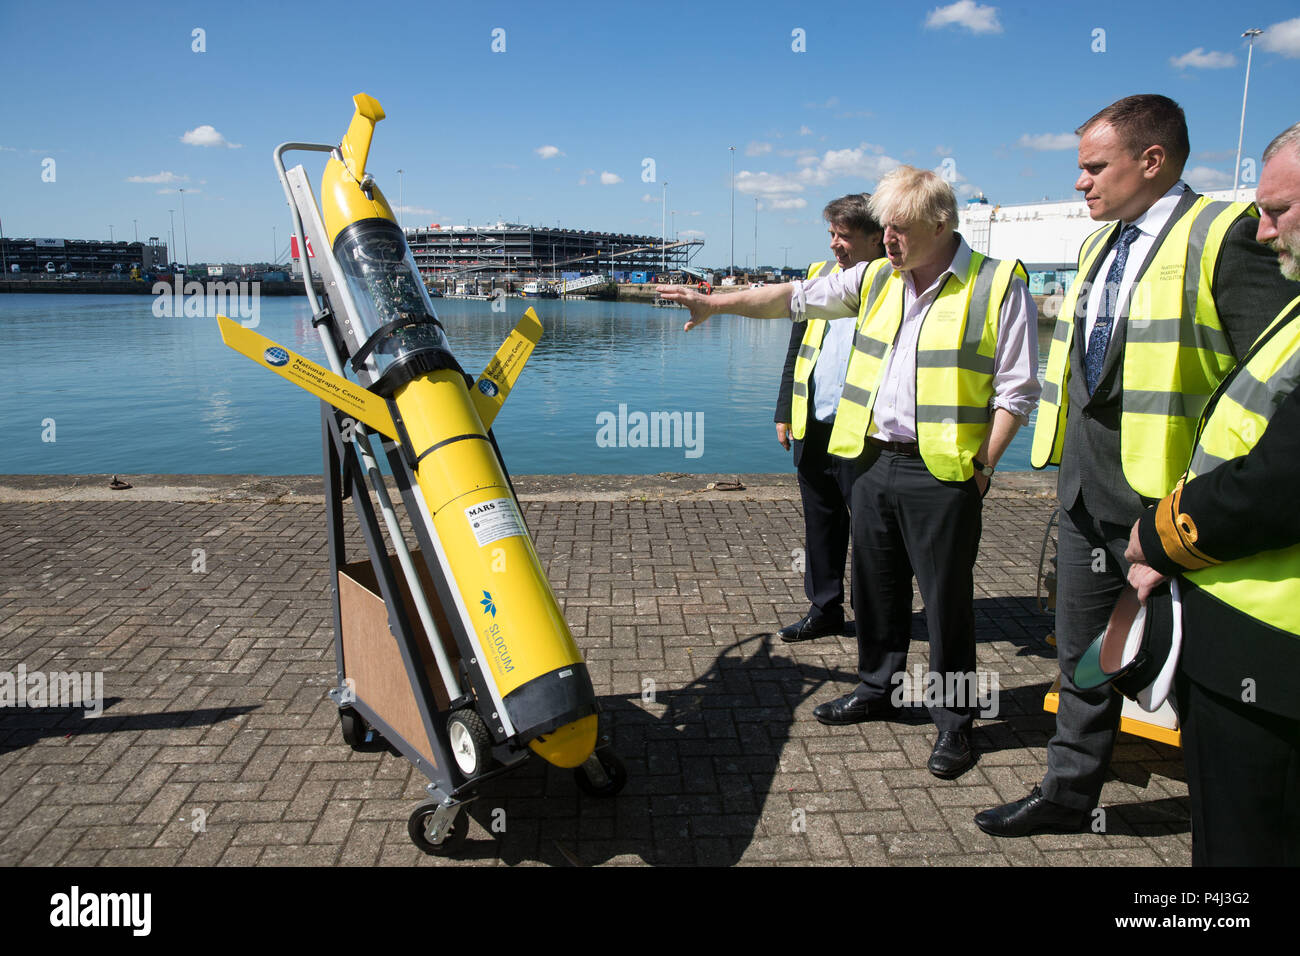 Segretario di Stato per gli affari esteri, Boris Johnson, guarda un aliante elettrico utilizzato per attività scientifiche di ricerca marittima, durante la sua visita alla National Oceanography Centre di Southampton in vista del prossimo FCO oceani strategia. Foto Stock